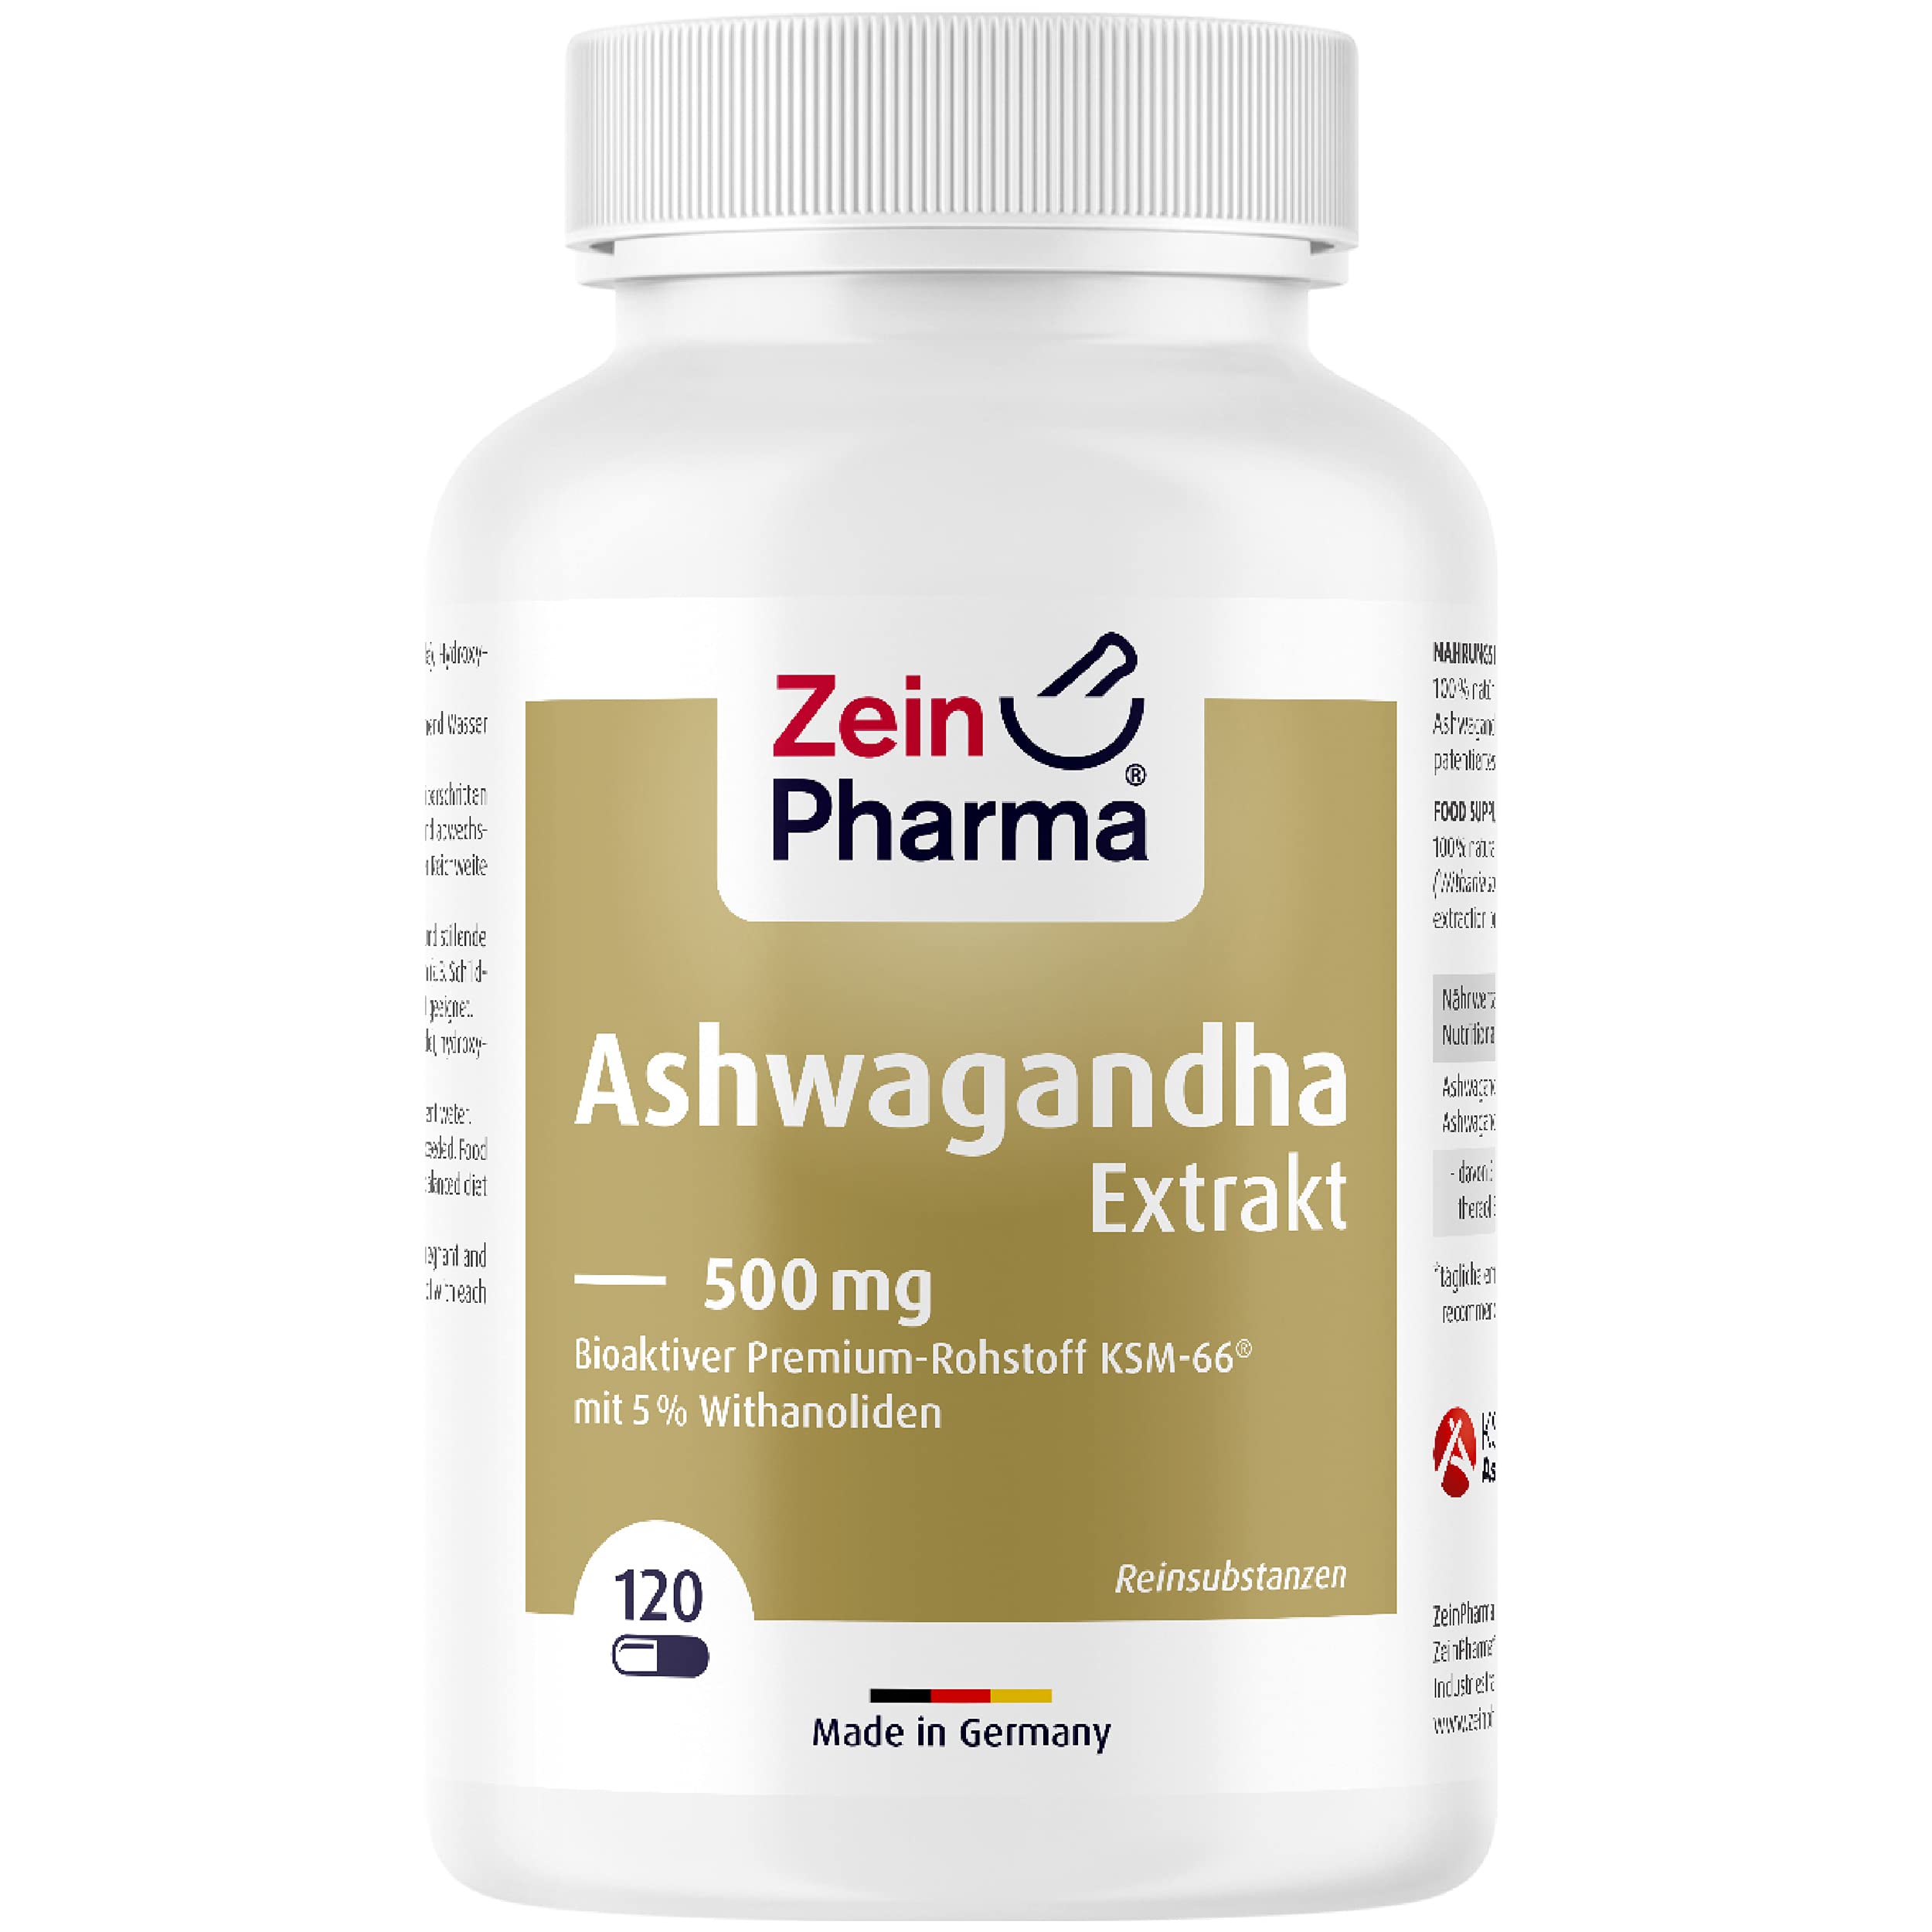 ZeinPharma Ashwagandha Extrakt 120 Kapseln 500mg - Ashwagandha Wurzel-Extrakt hochdosiert mit 5% Withanolide, Schlafbeere aus Indien, Nahrungsergänzungsmittel pflanzlich, laborgeprüft